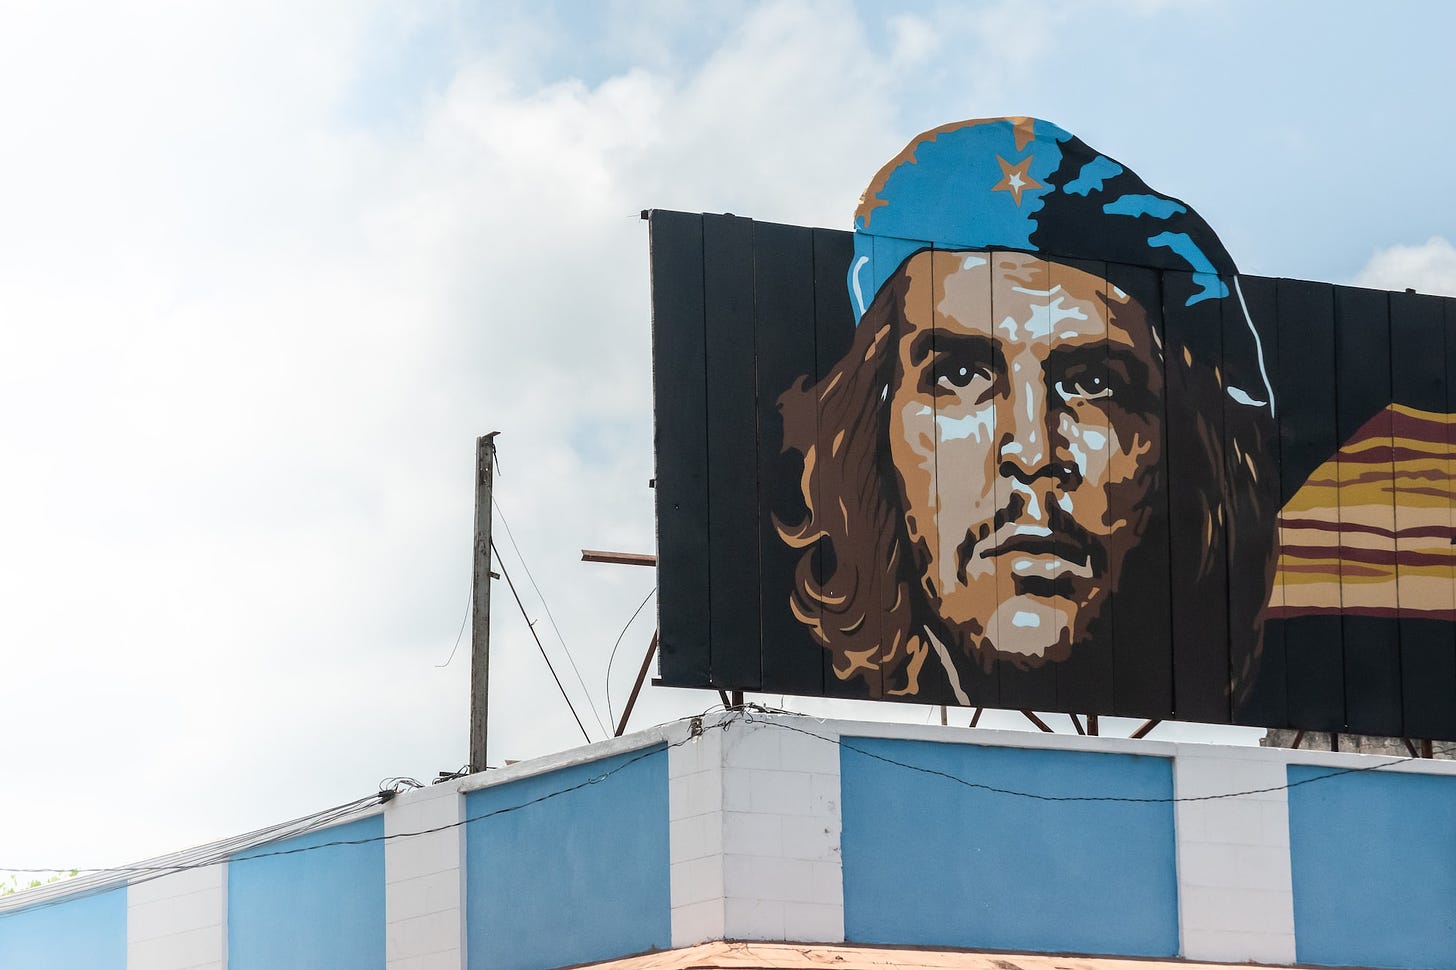 Che Guevara sau mitul comunismului bine intenționat